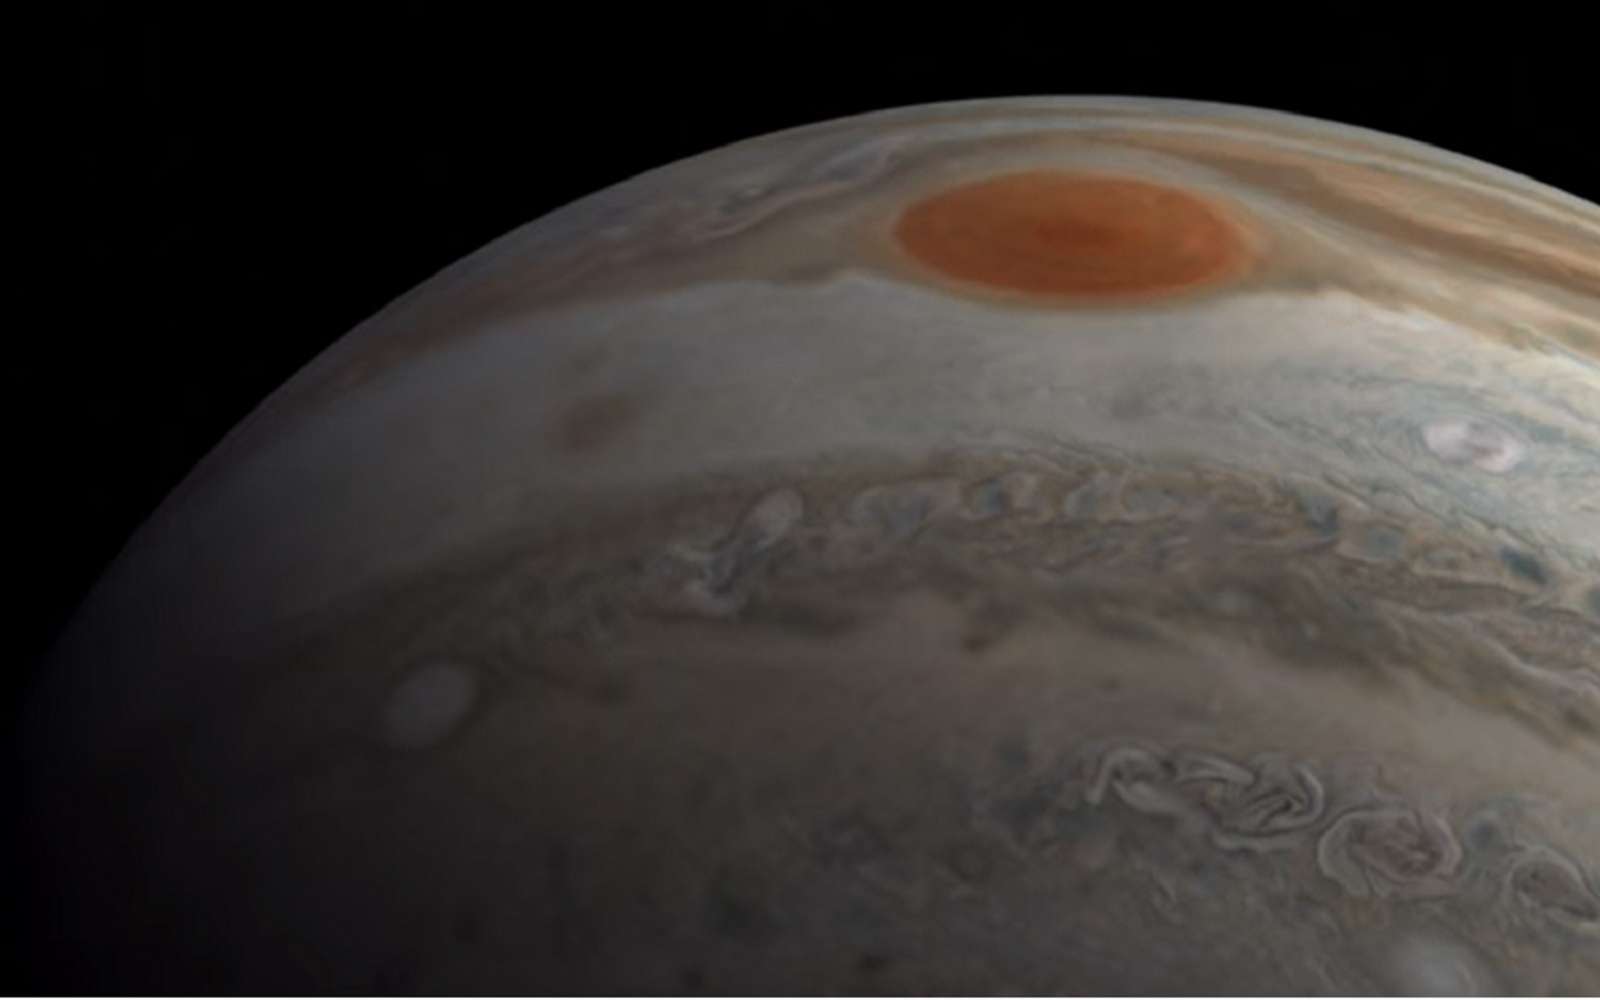 Grâce aux images capturées par la sonde Juno, le citoyen scientifique Kevin M. Gill est parvenu à recréer une modélisation 3D de la surface de Jupiter. © NASA, JPL-Caltech, SwRI, MSSS, Kevin M. Gill, CC BY